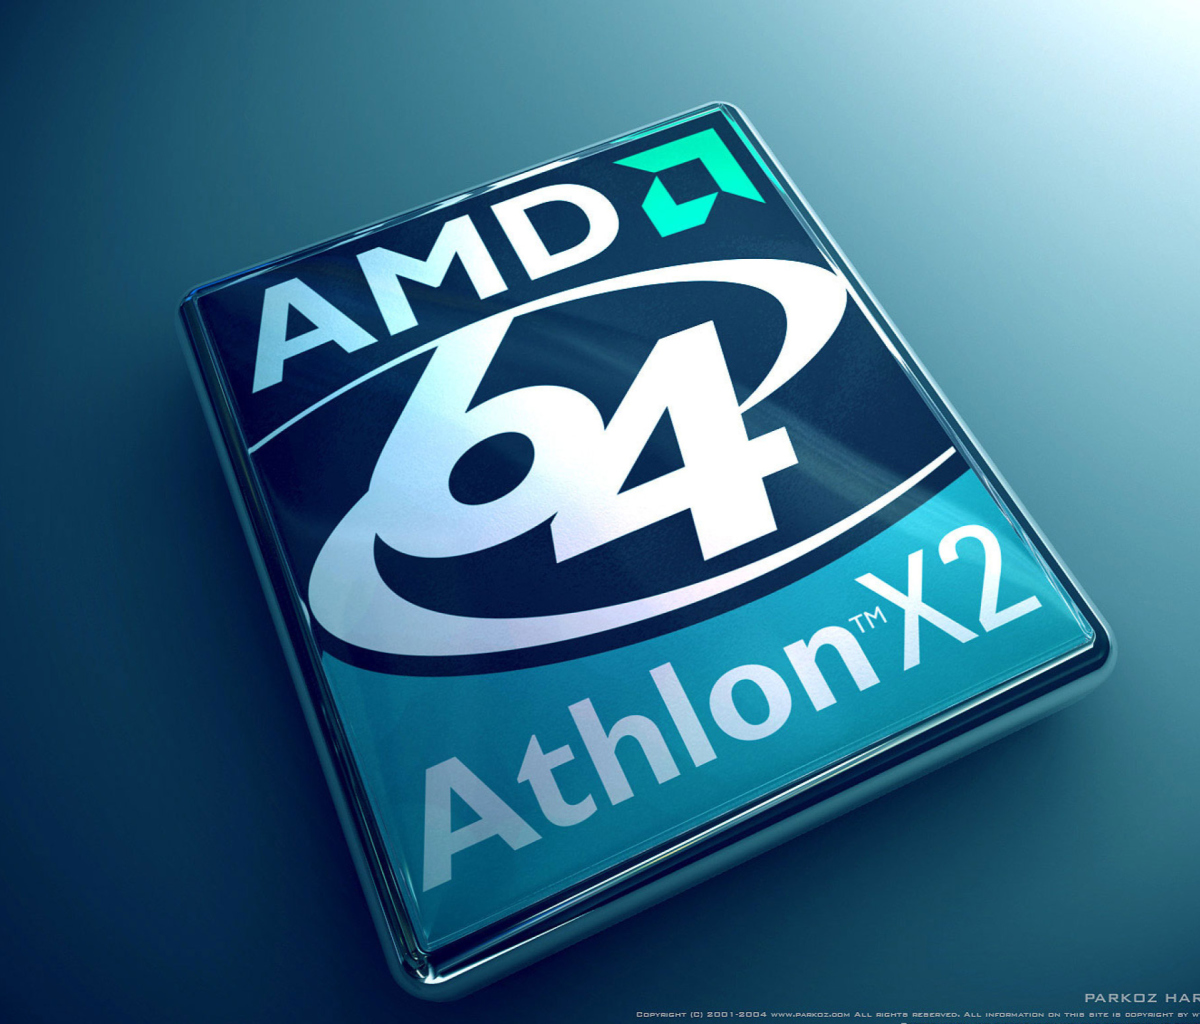 Sfondi AMD Athlon 64 X2 1200x1024